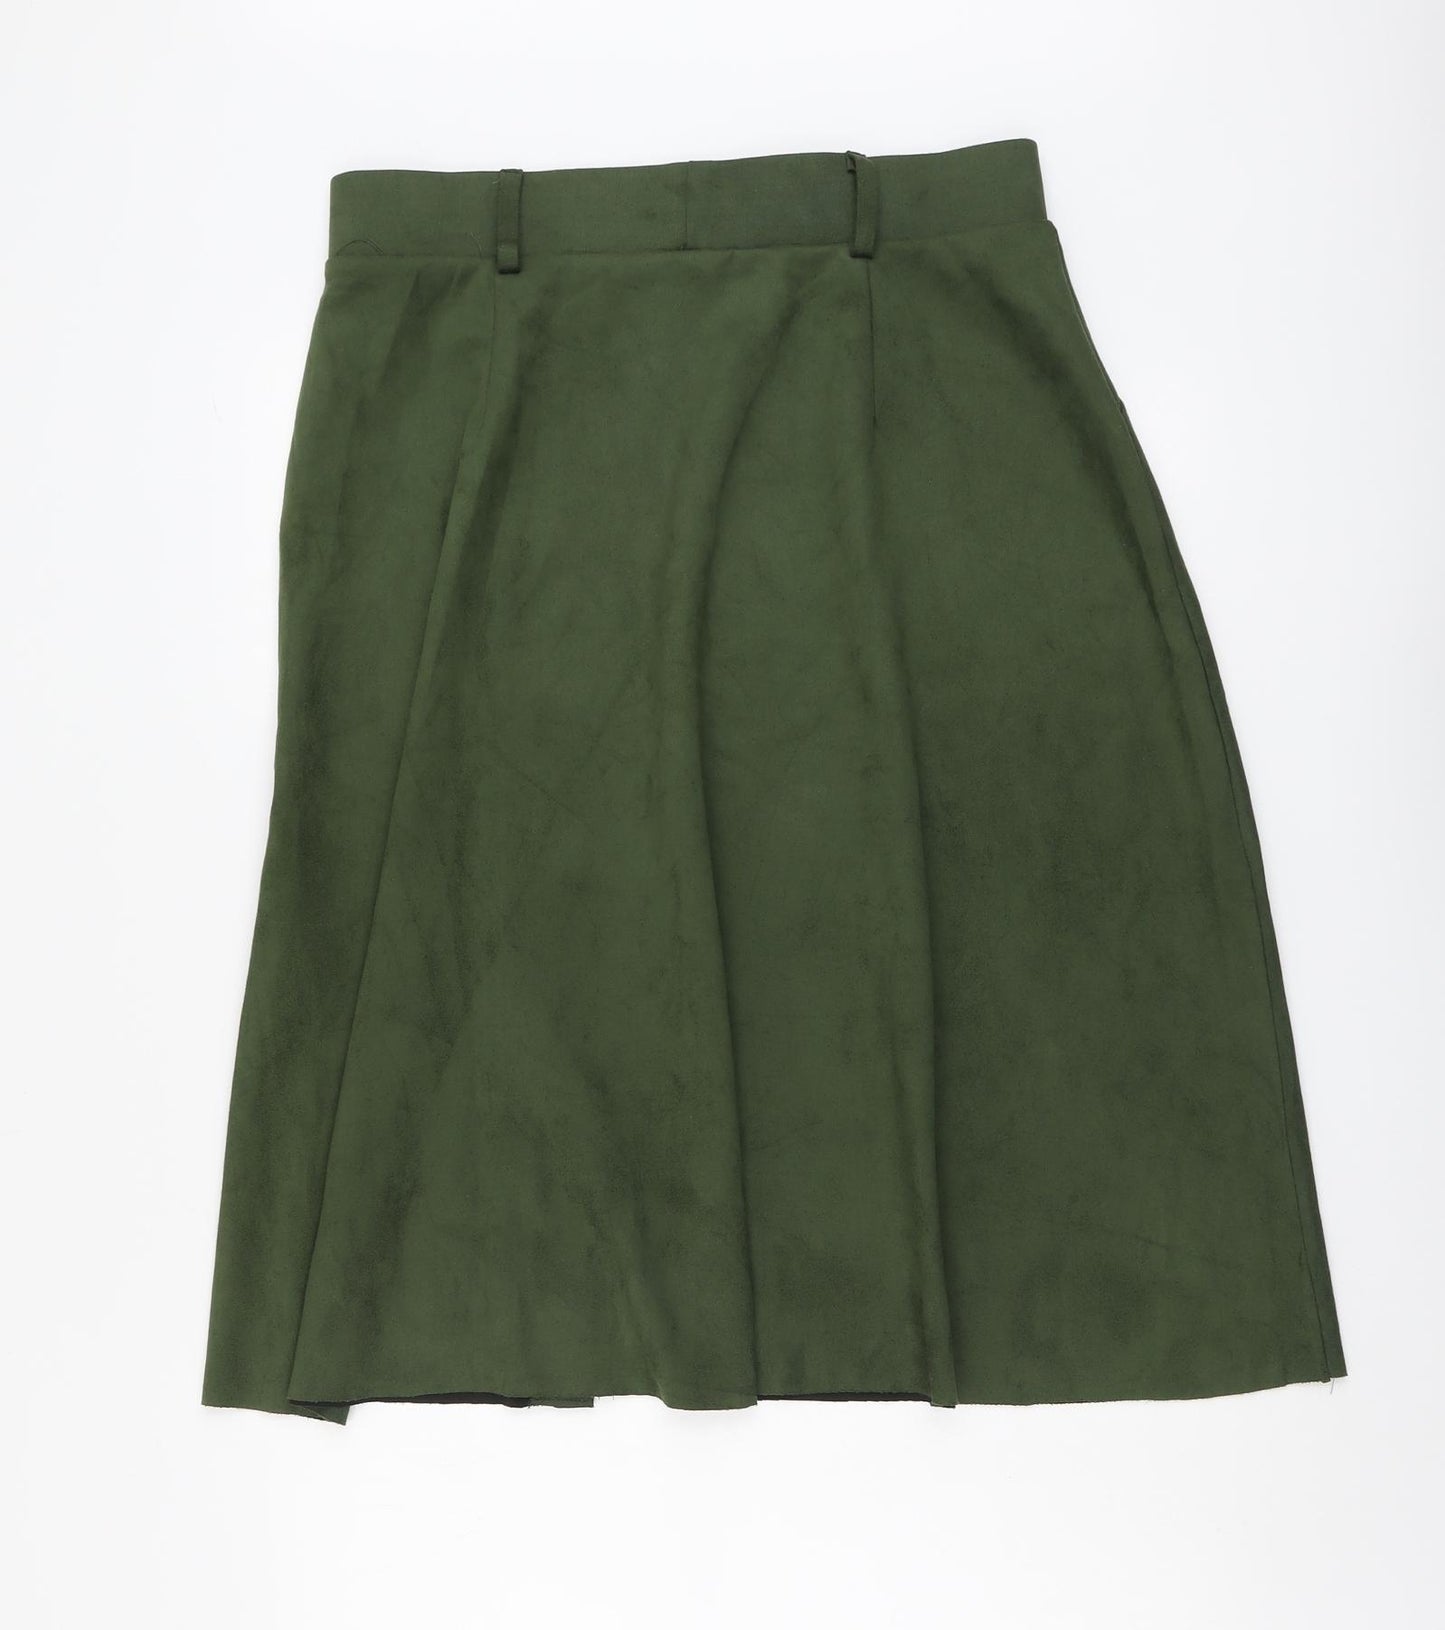 Klass Womens Green Polyester A-Line Skirt Size 14